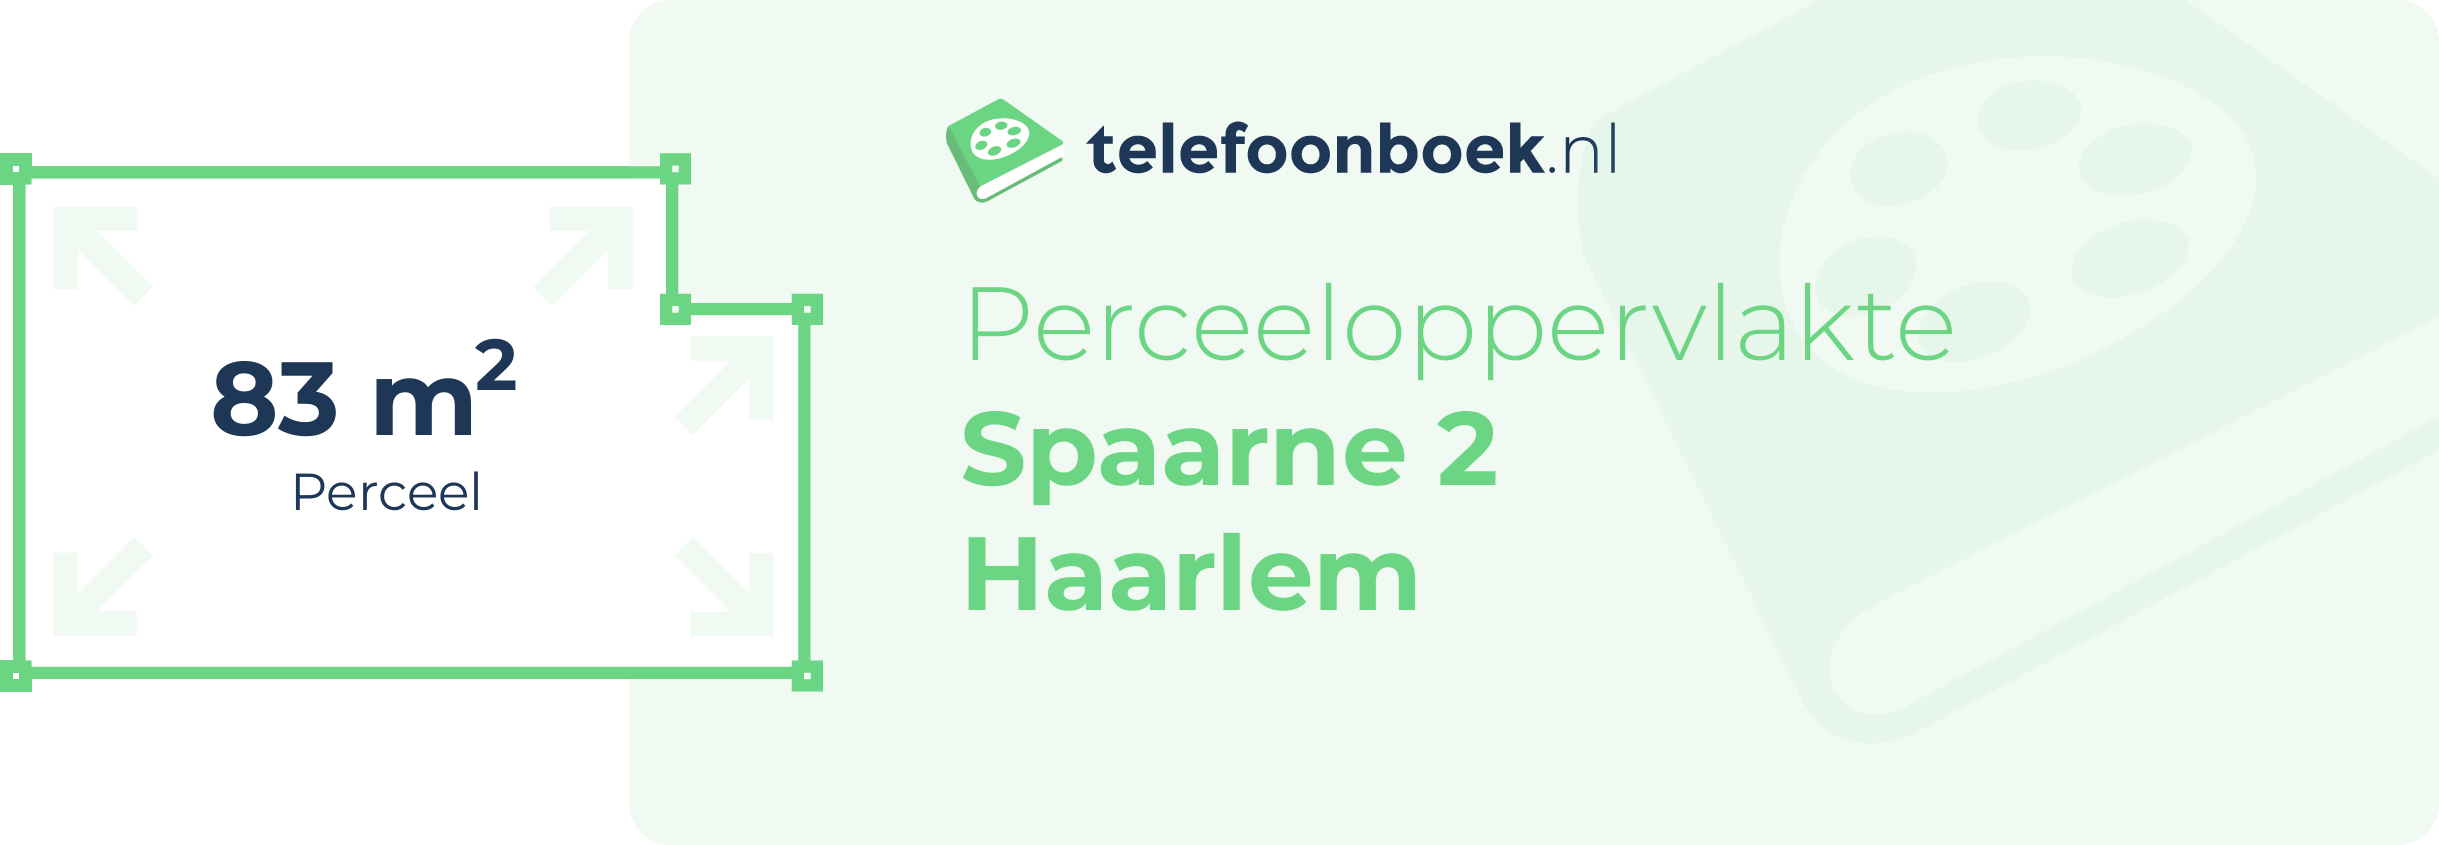 Perceeloppervlakte Spaarne 2 Haarlem